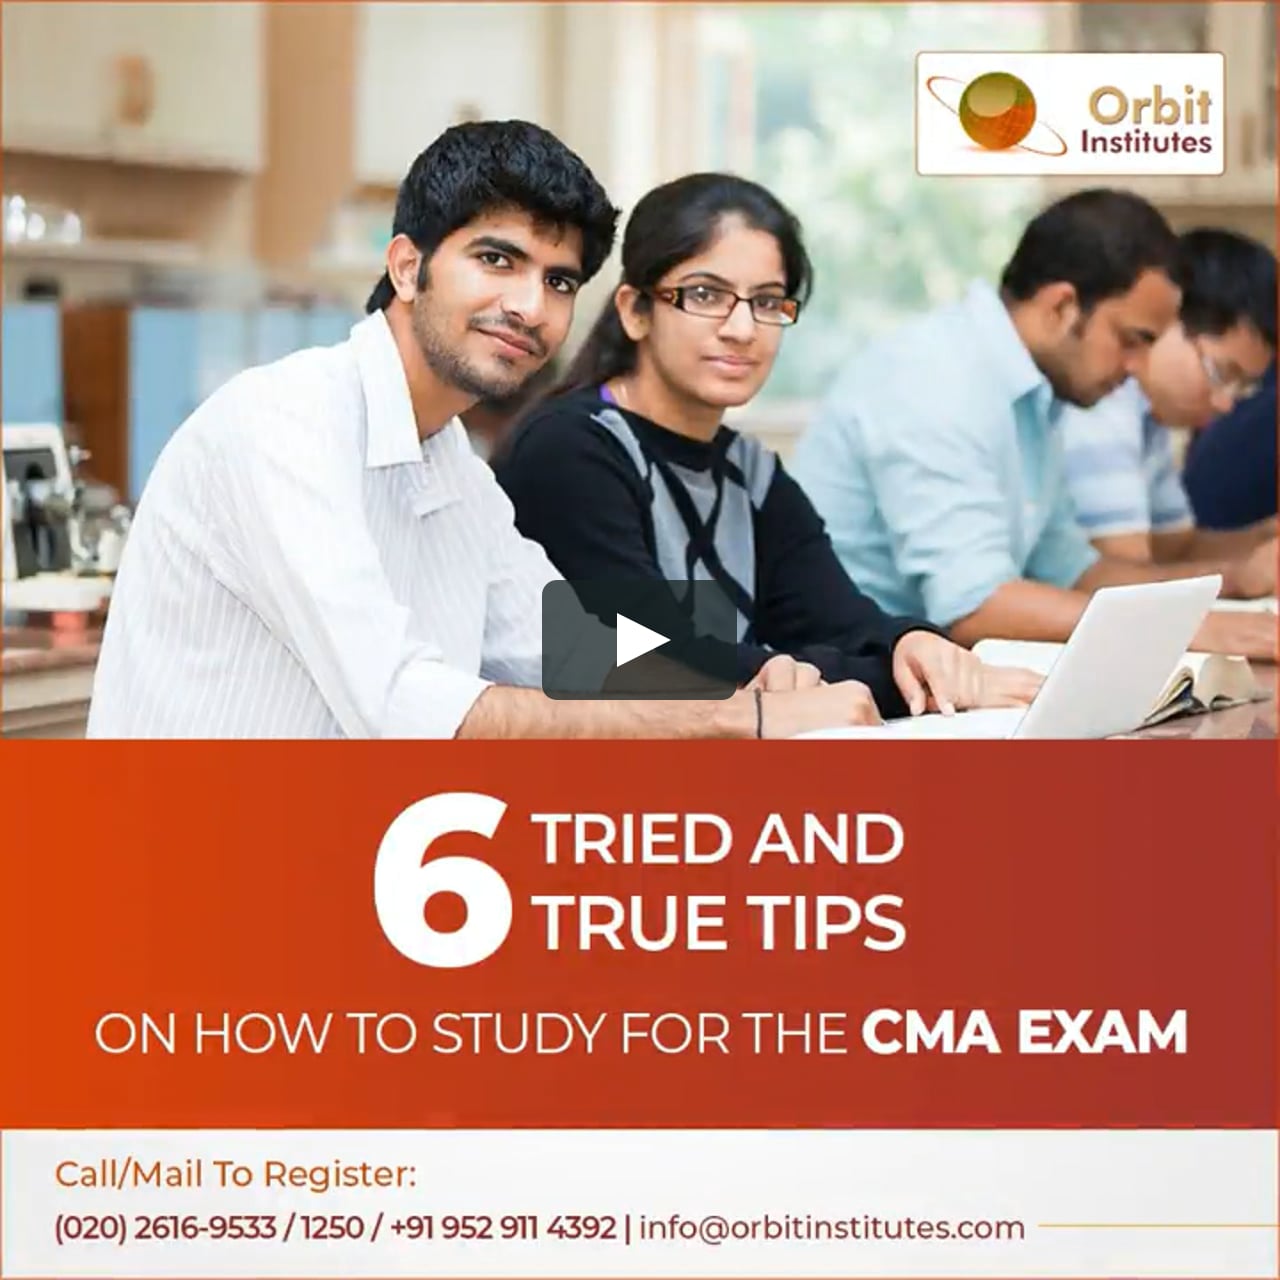 How To Study For CMA Exam Orbit Institute mp4 On Vimeo